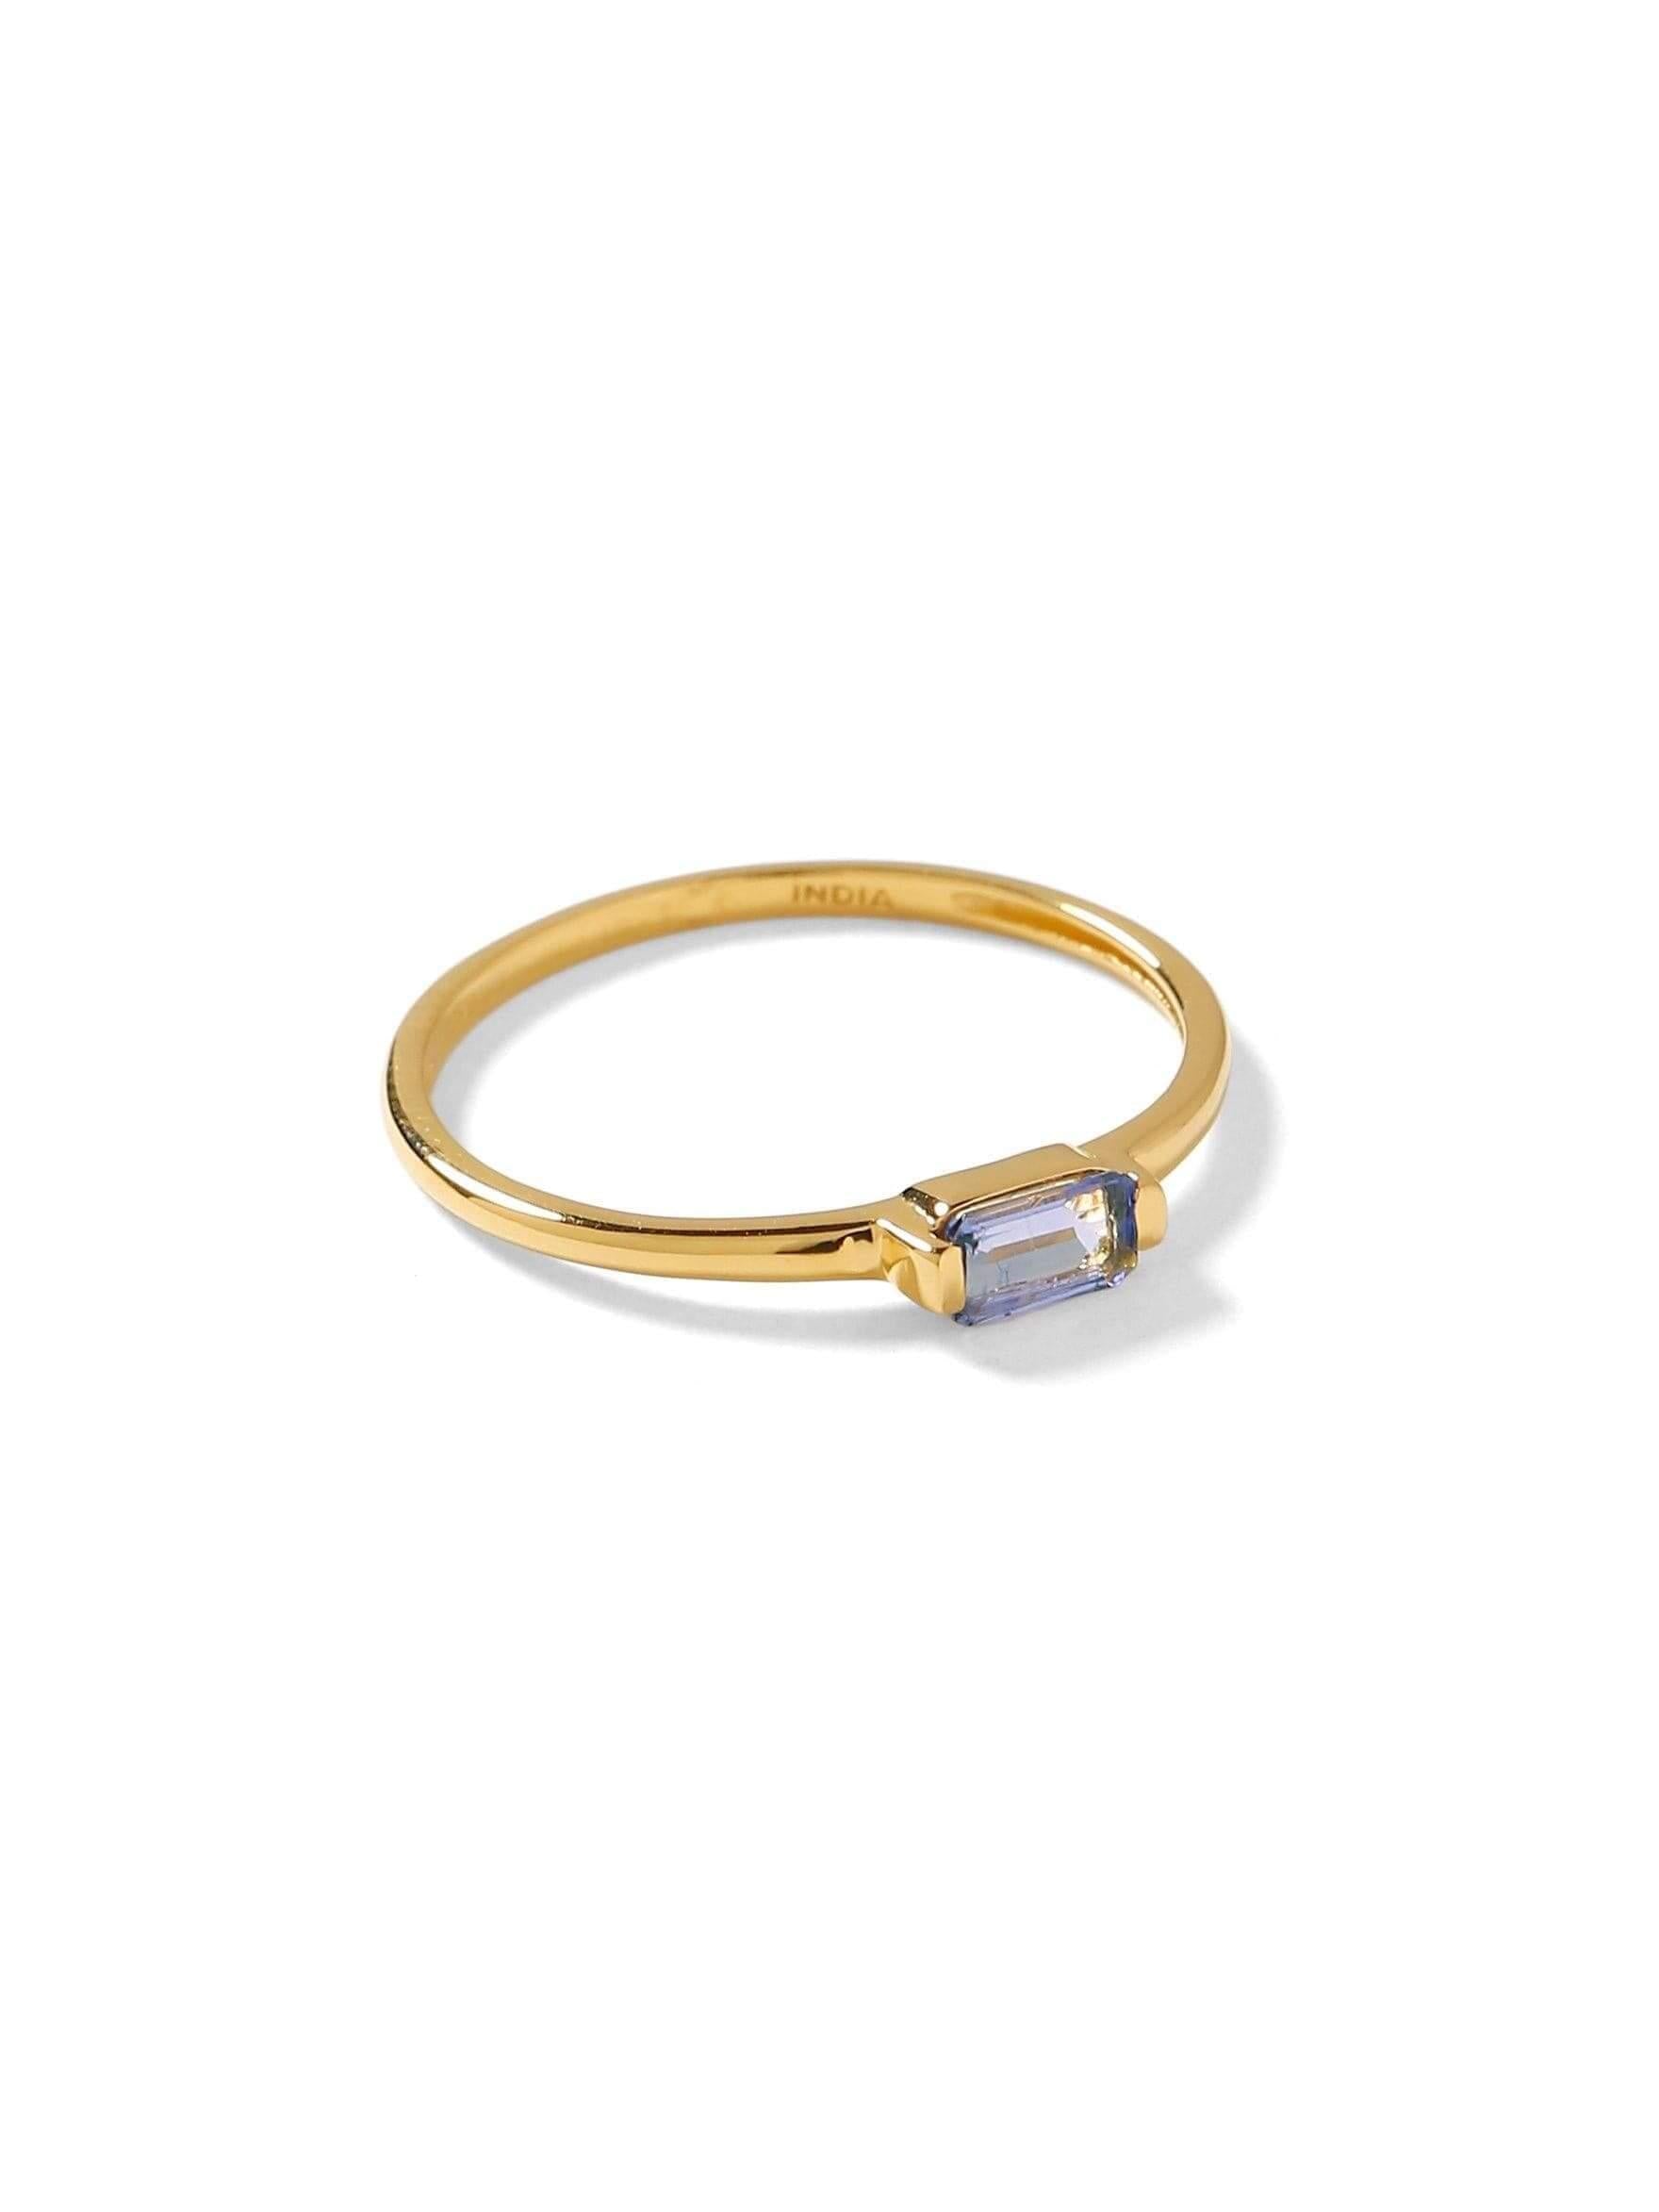 0.34 Ct Tanzanite Solid 10k Yellow Gold Ring Jewelry - YoTreasure